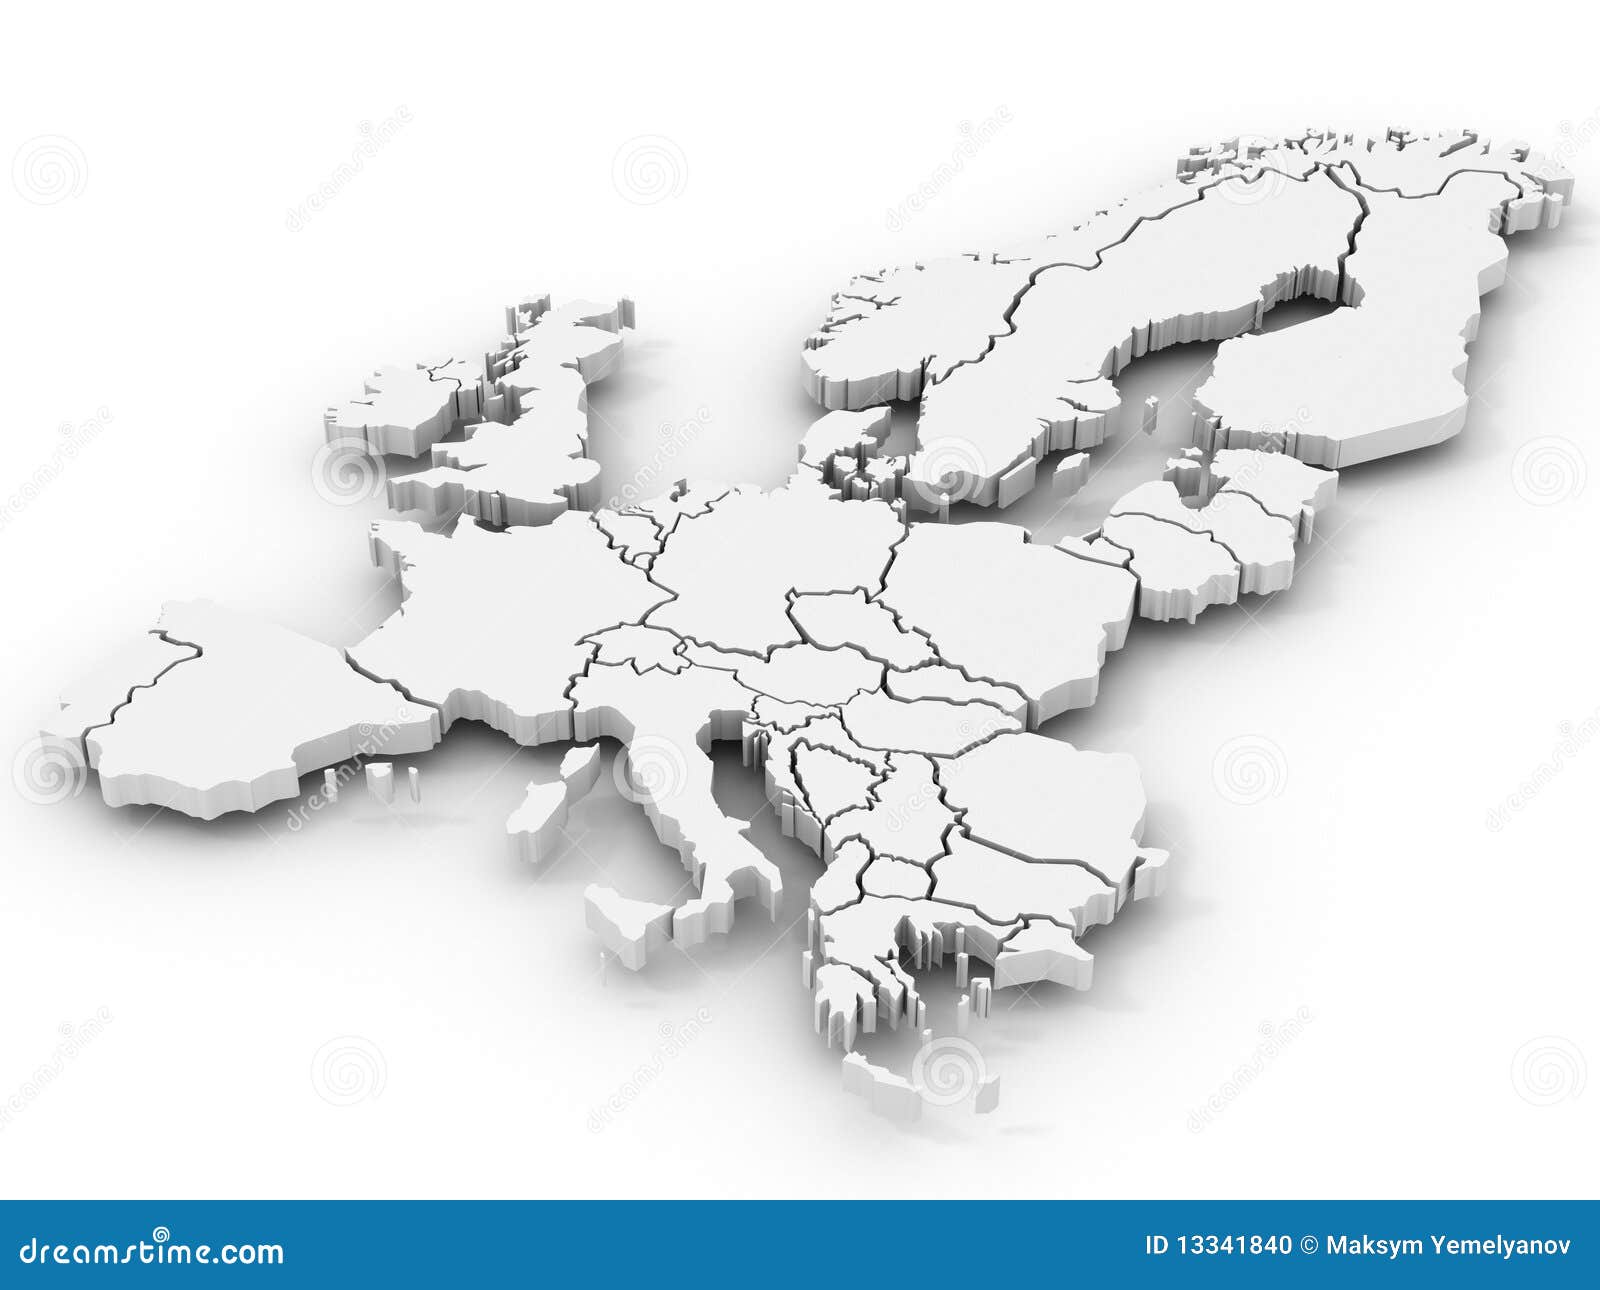 Mapa estilizado de portugal. mapa verde 3d isométrico com cidades,  fronteiras, capital lisboa, regiões.